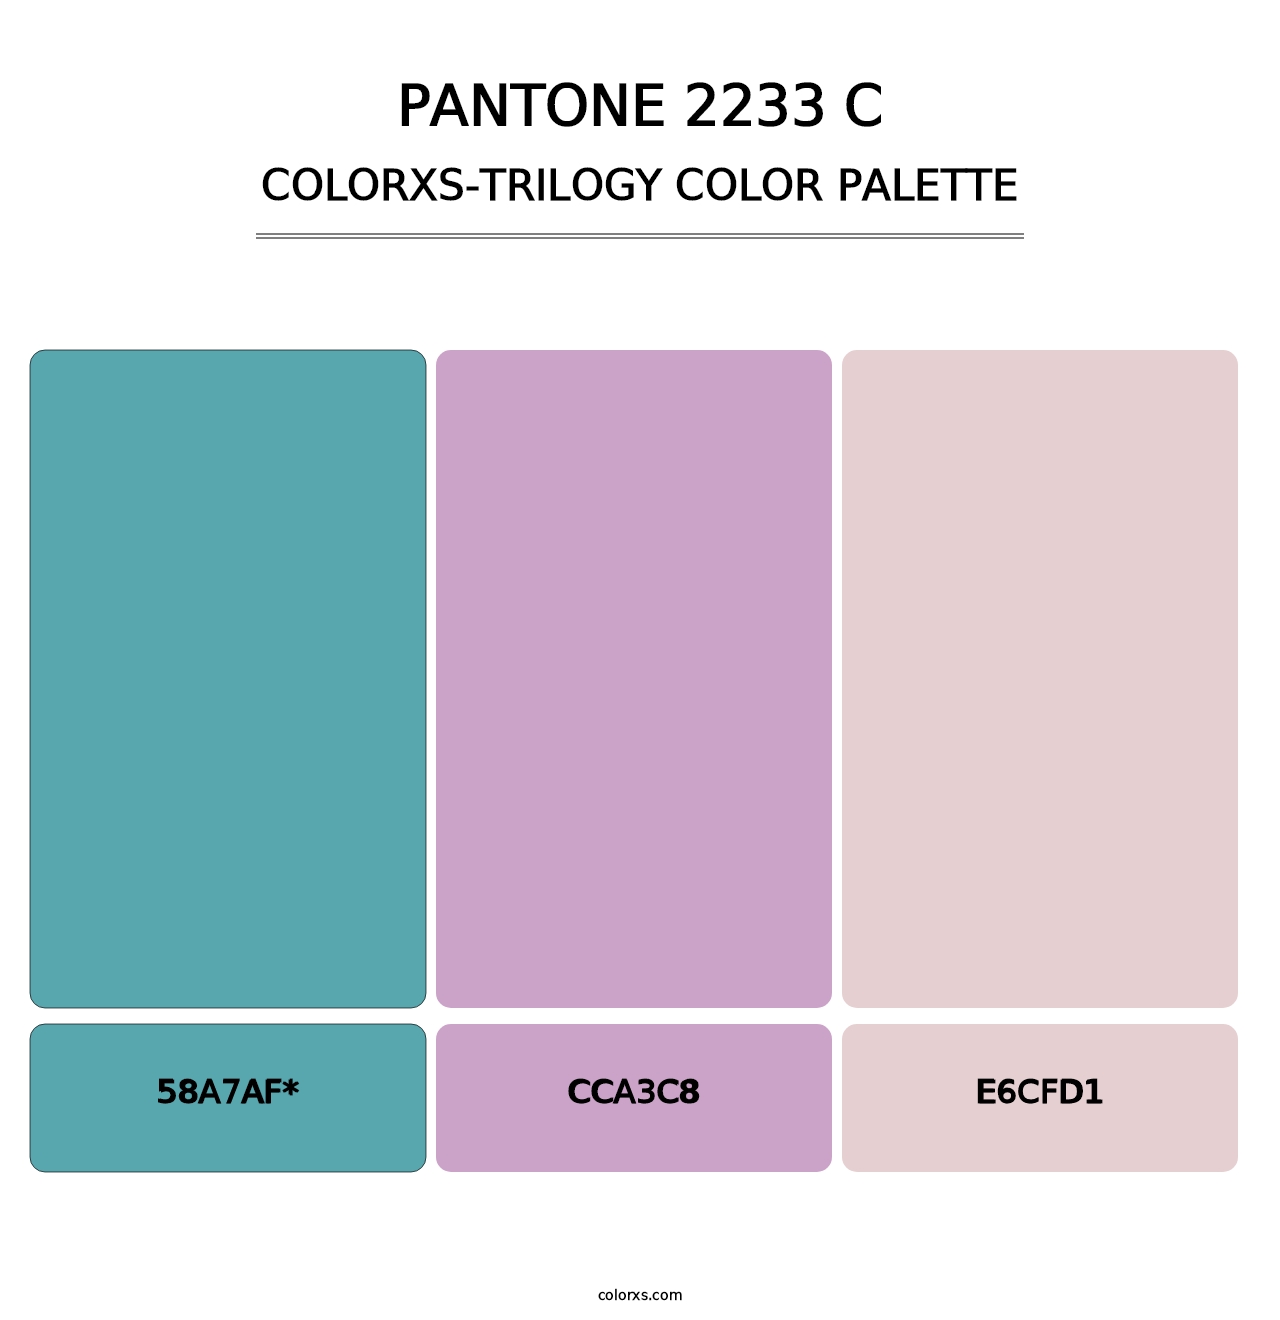 PANTONE 2233 C - Colorxs Trilogy Palette